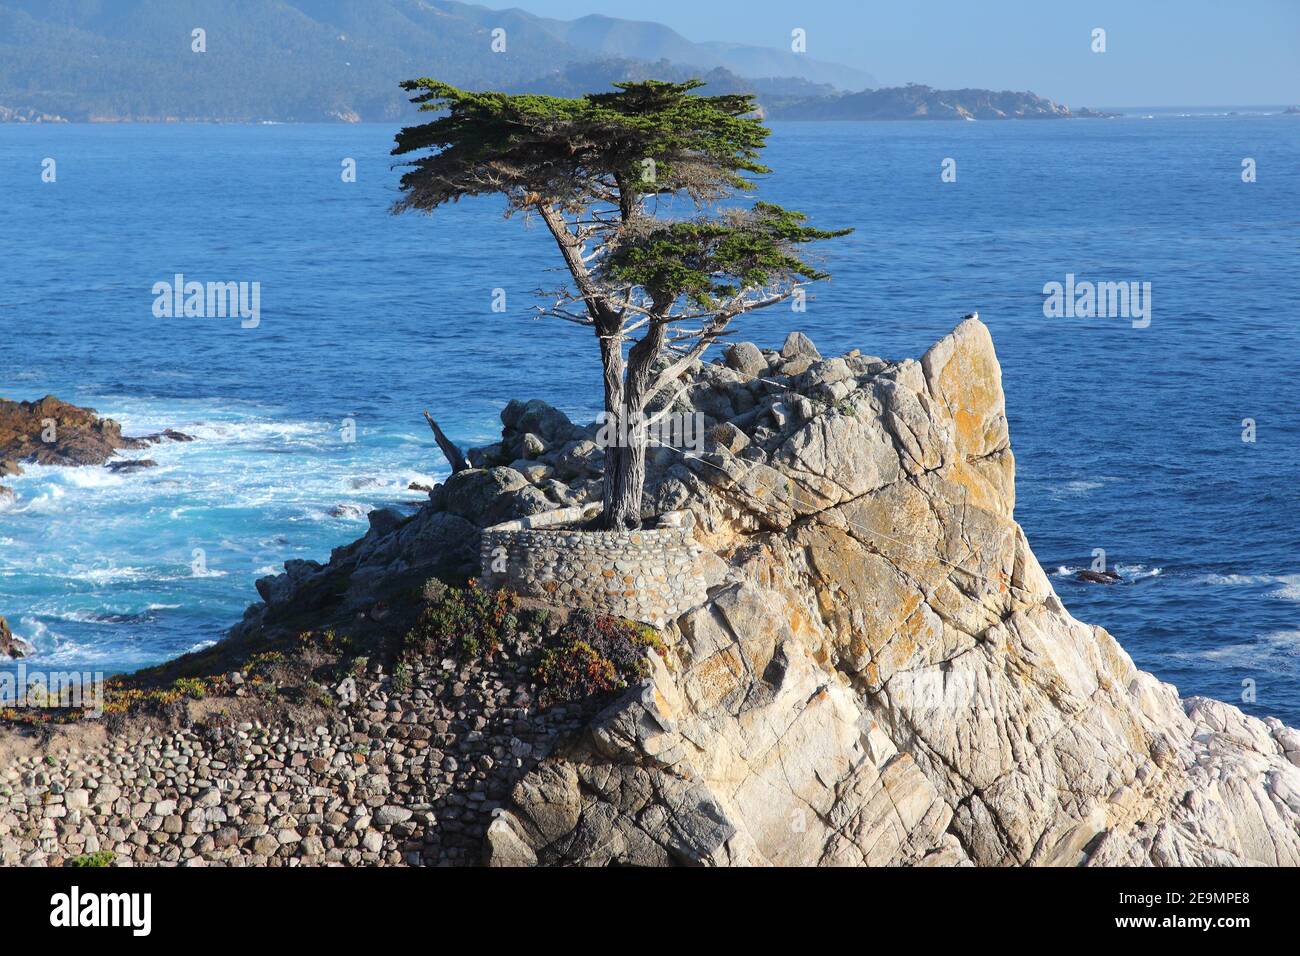 MONTEREY, Kalifornien - 7. APRIL 2014: Lone Cypress Tree View an der berühmten 17 km Fahrt in Monterey. Quellen behaupten, es ist eines der am meisten fotografierten Stockfoto